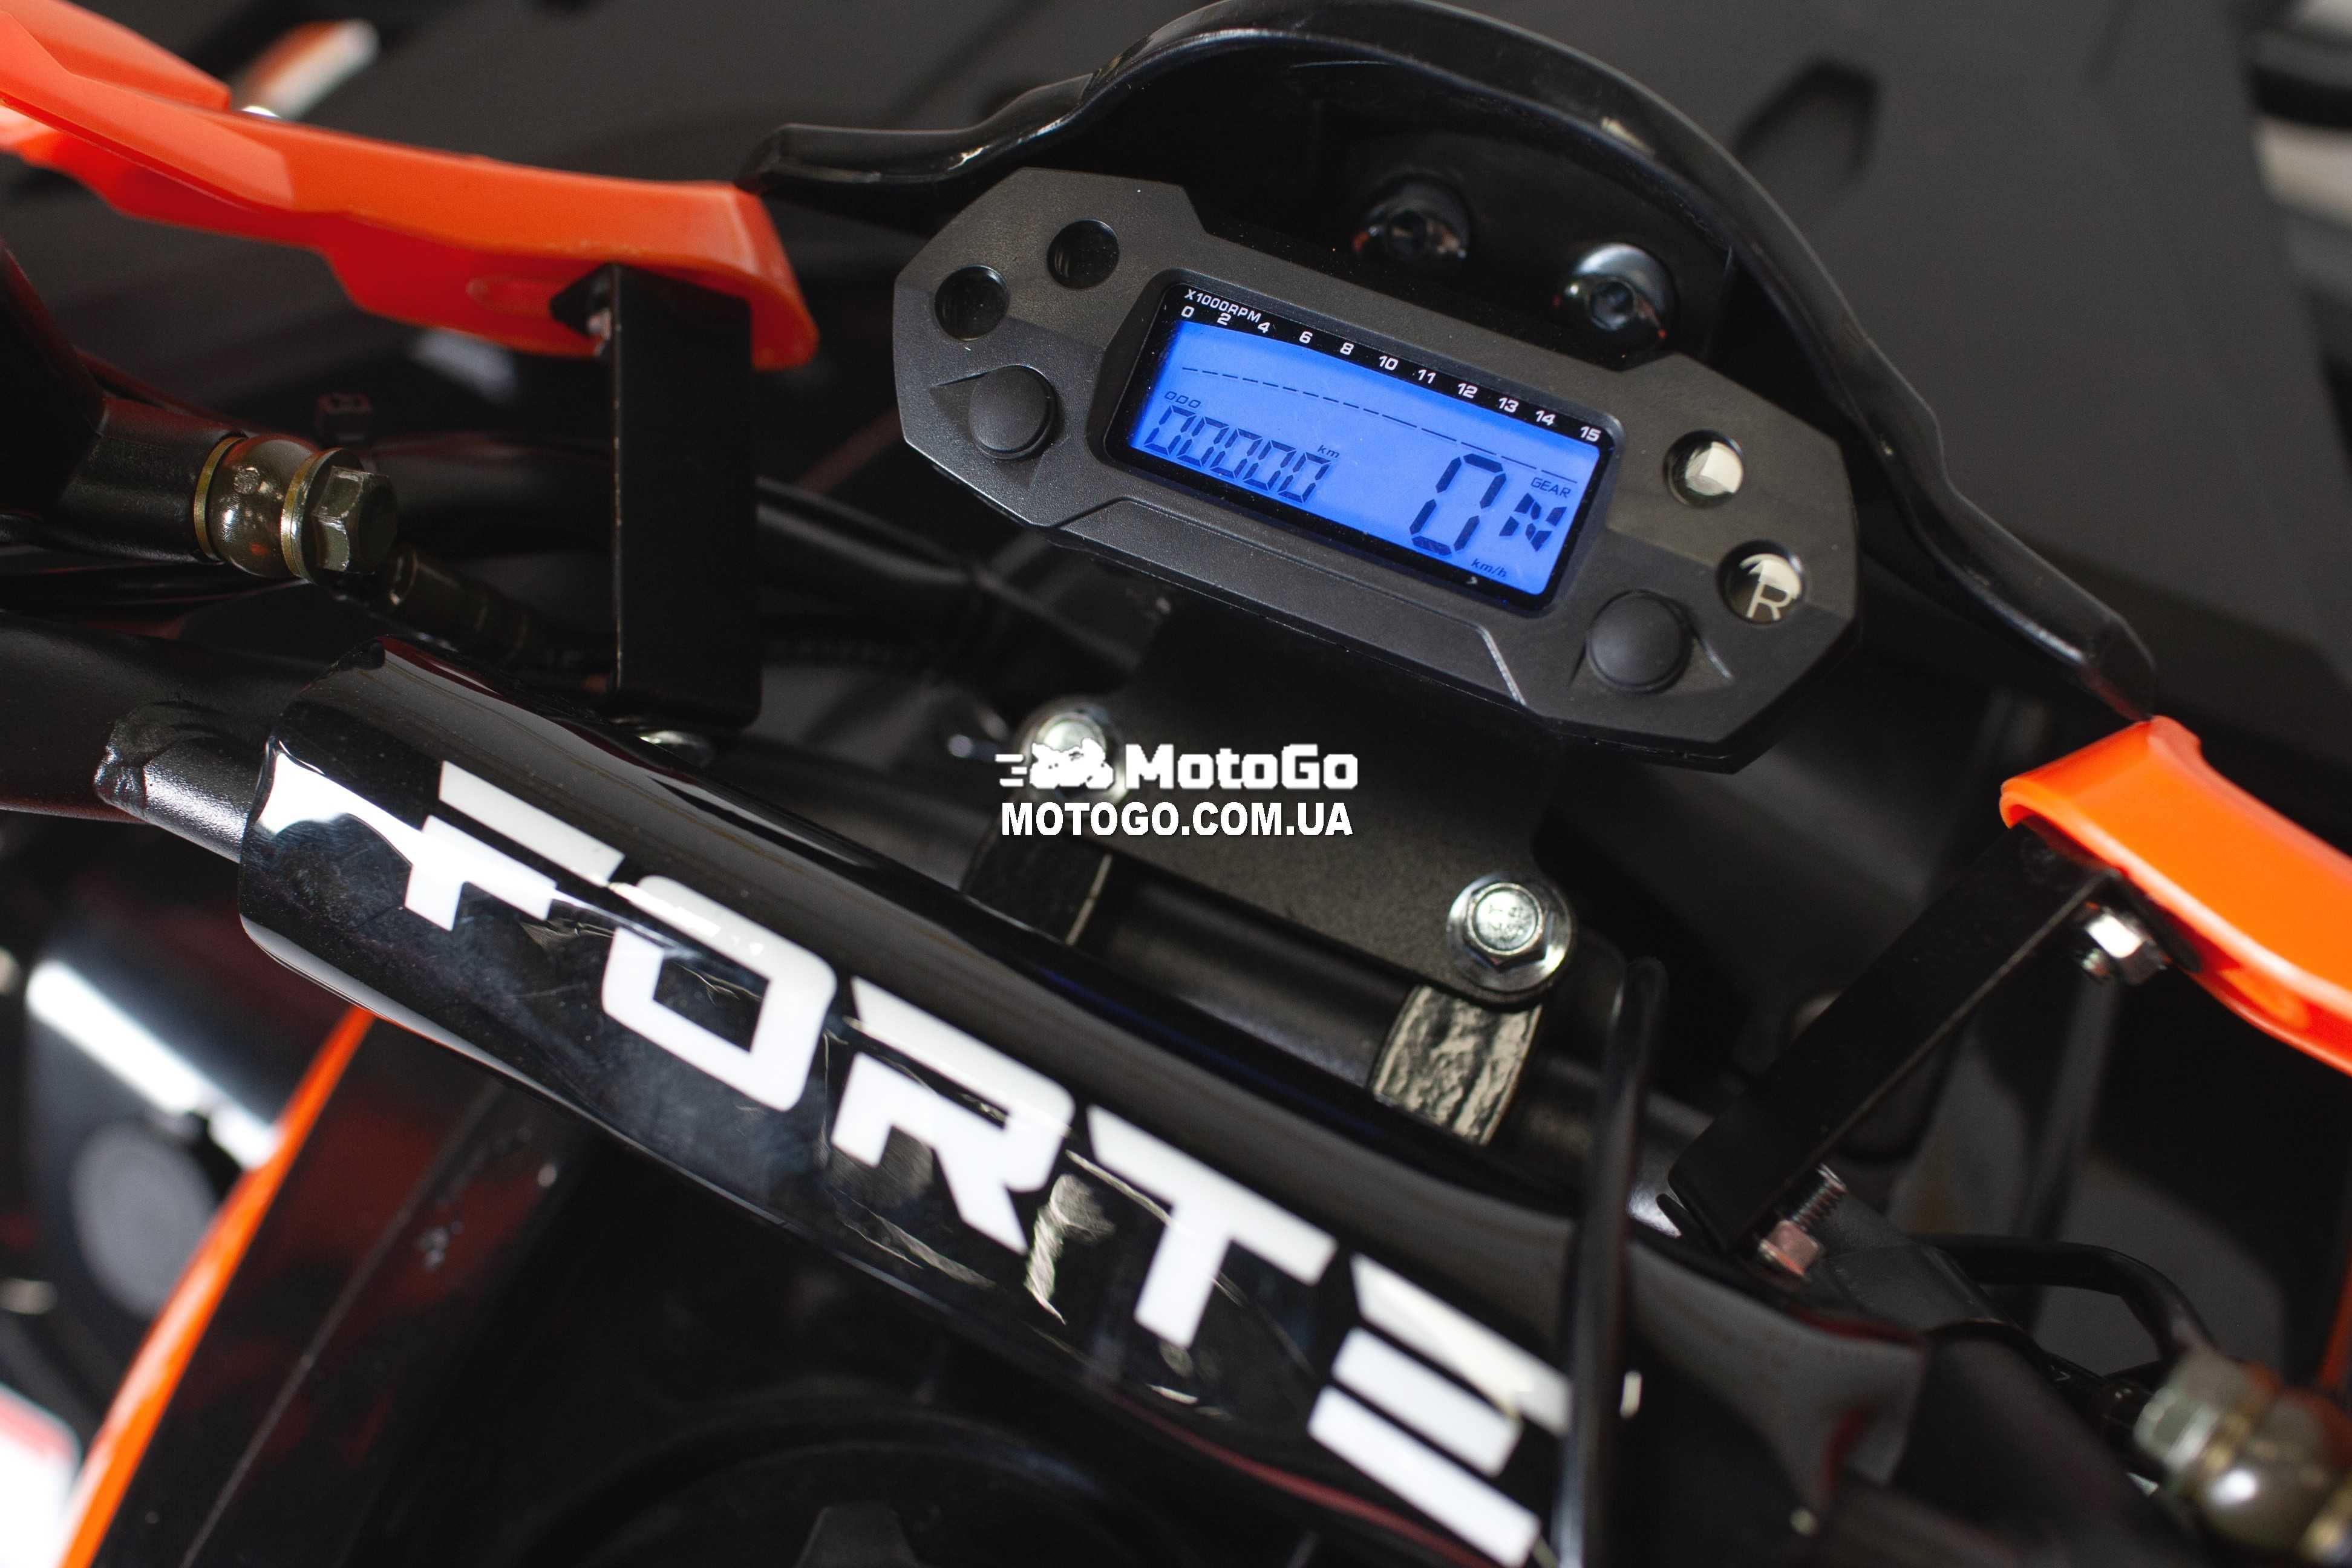 Новый Детский / Подростковый Квадроцикл Forte 125G, КРЕДИТ!!